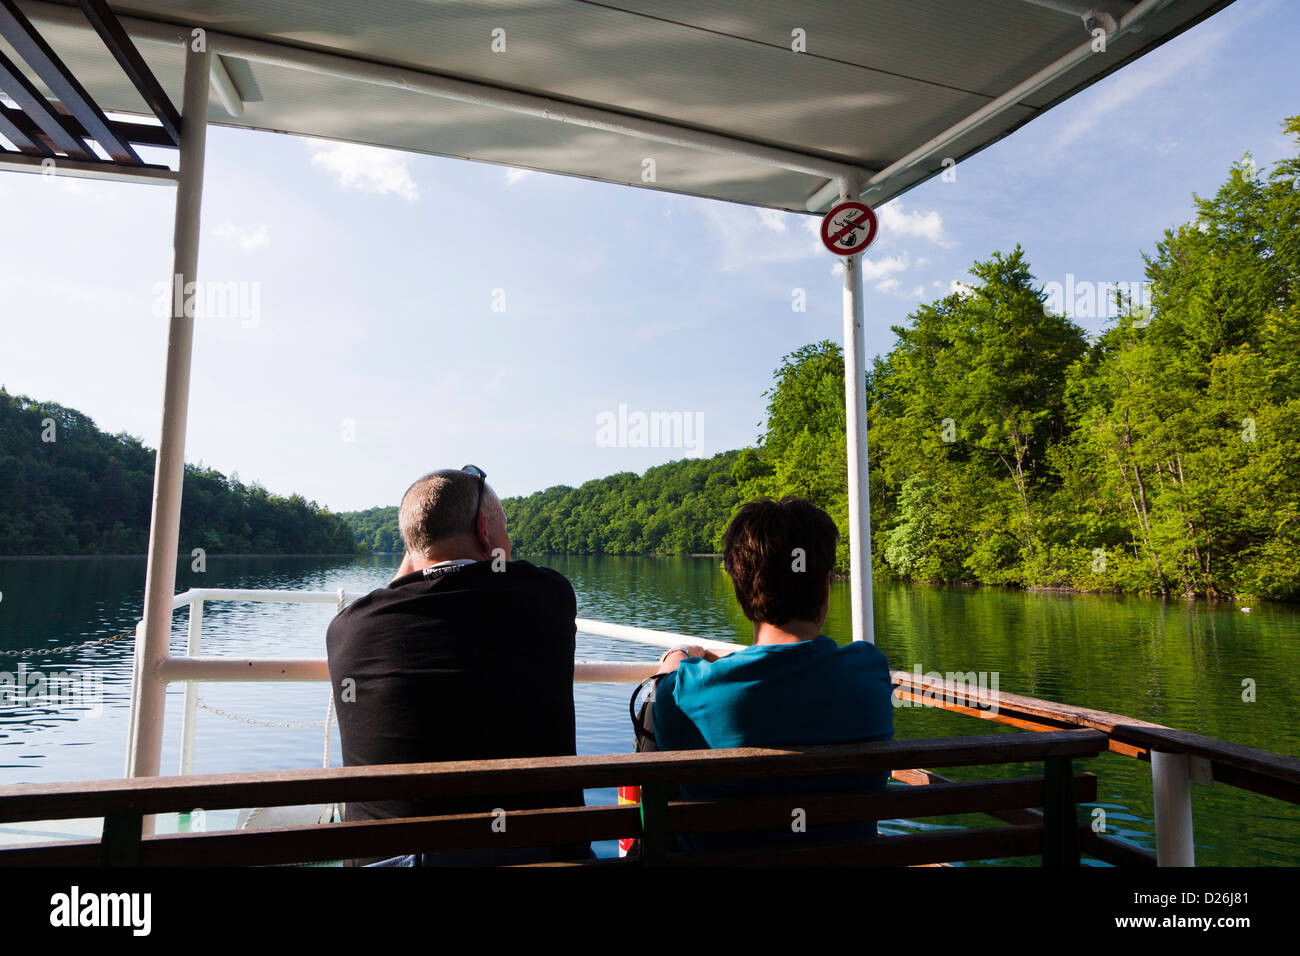 I Laghi di Plitvice nel Parco Nazionale Plitvicka Jezera. I visitatori di prendere una crociera sul lago Kozjak. Europa e Sud Croazia Foto Stock